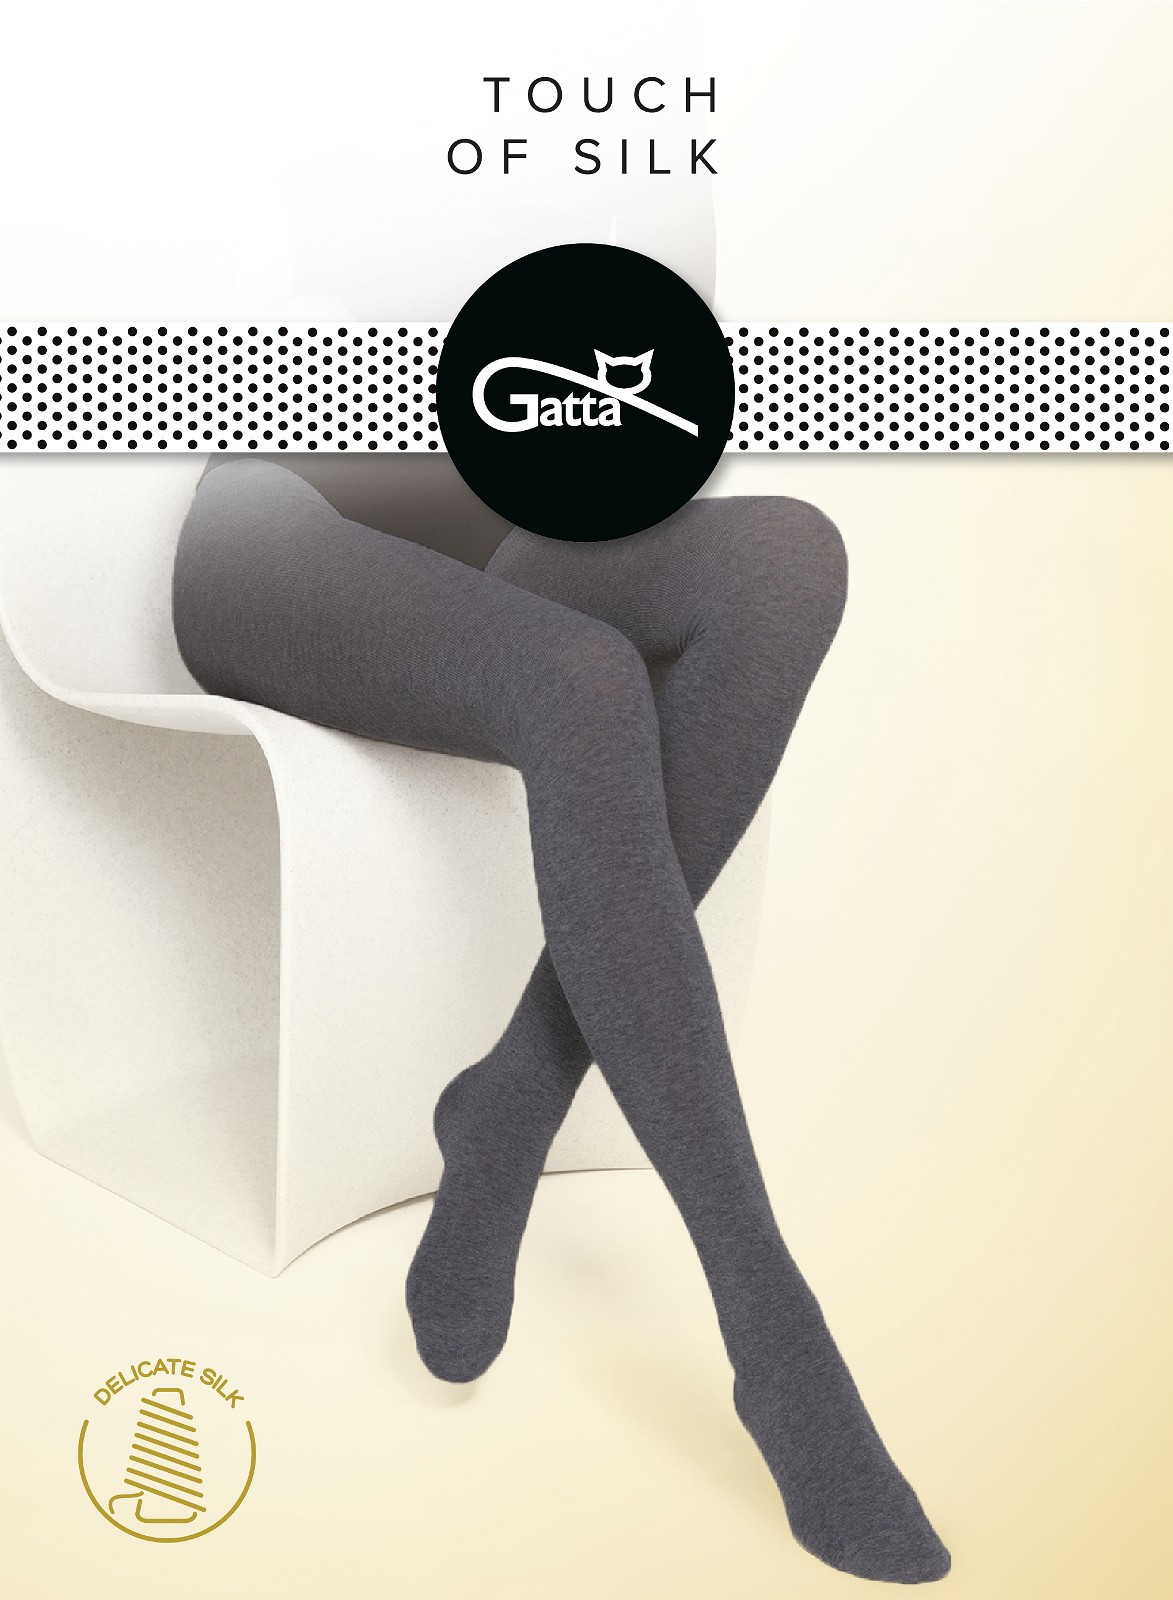 Dámské punčochové kalhoty Gatta Touch of Silk nero/černá 3-M